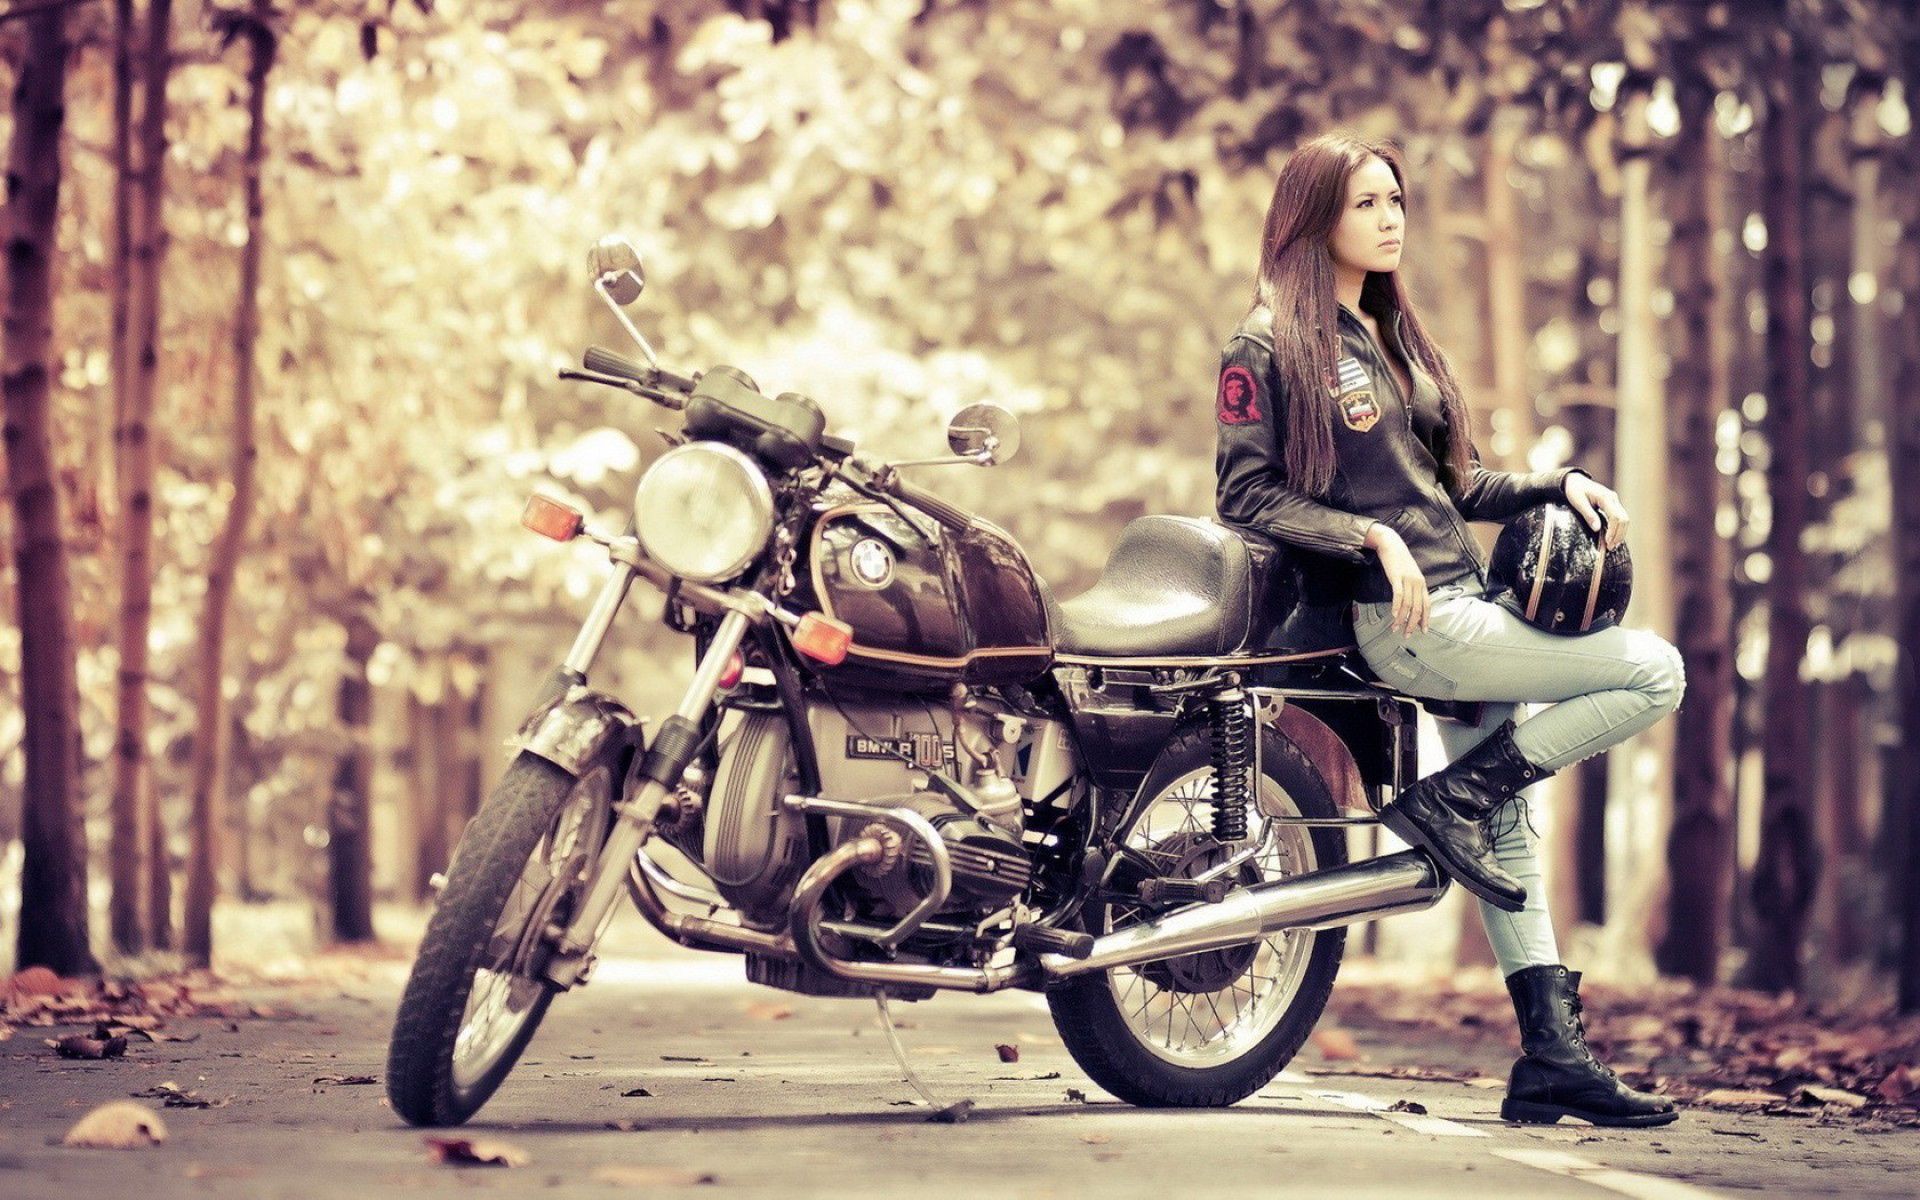  Motorrad Hintergrundbild 1920x1200. Motorcycle Girl Wallpaper